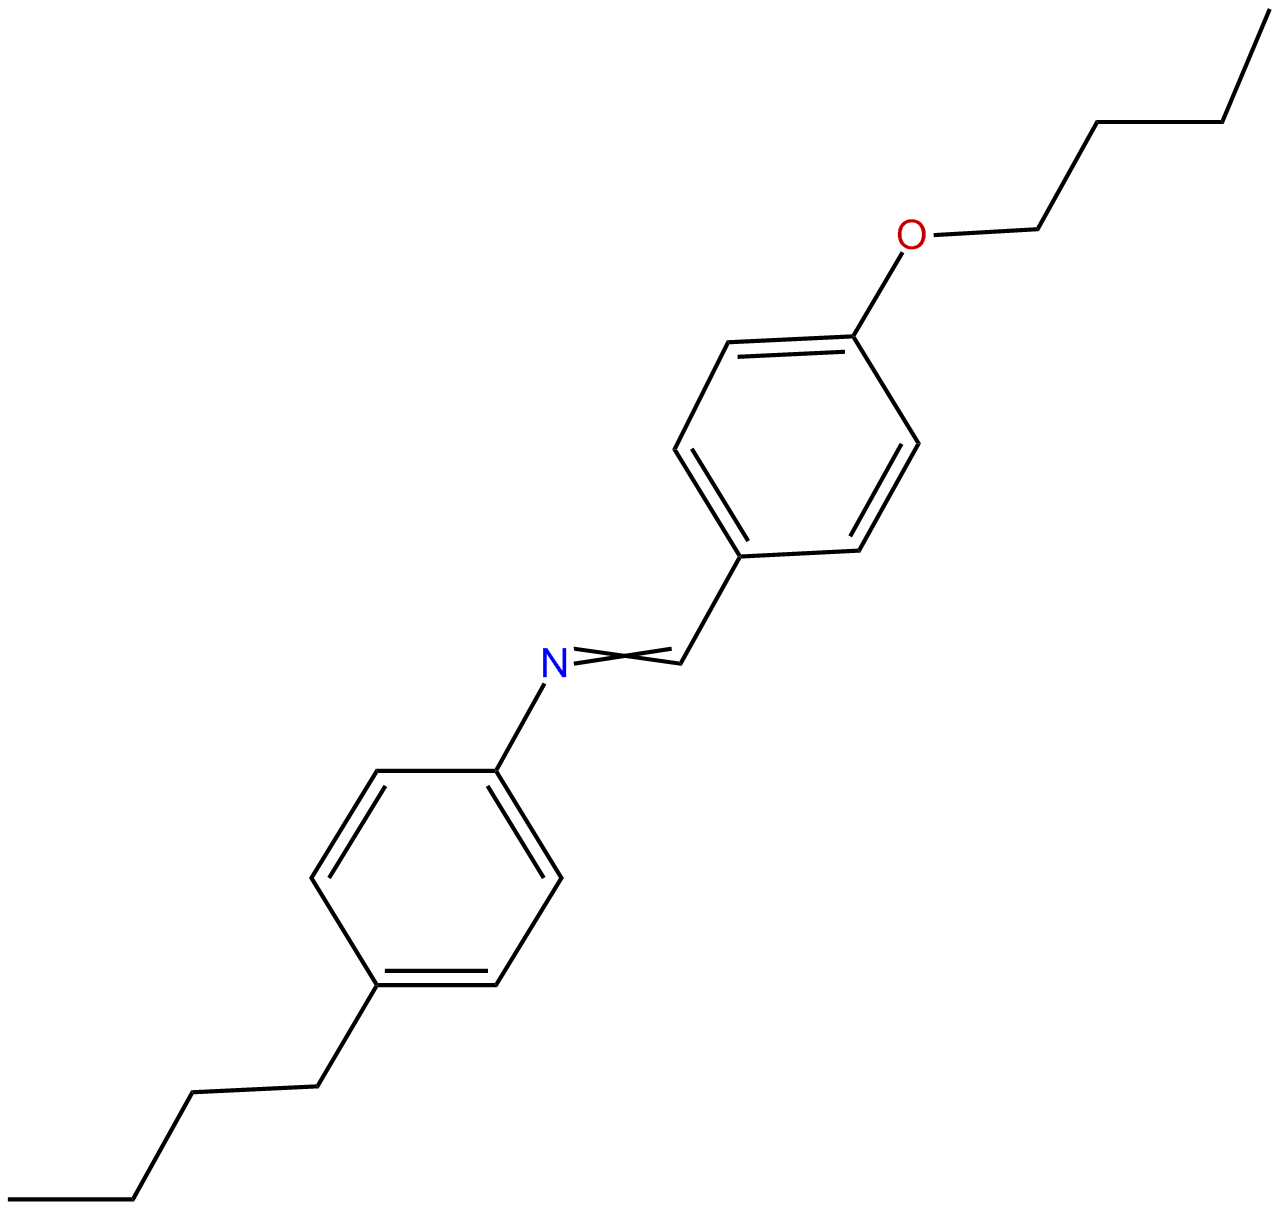 Image of p-butoxybenzylidene p-butylaniline